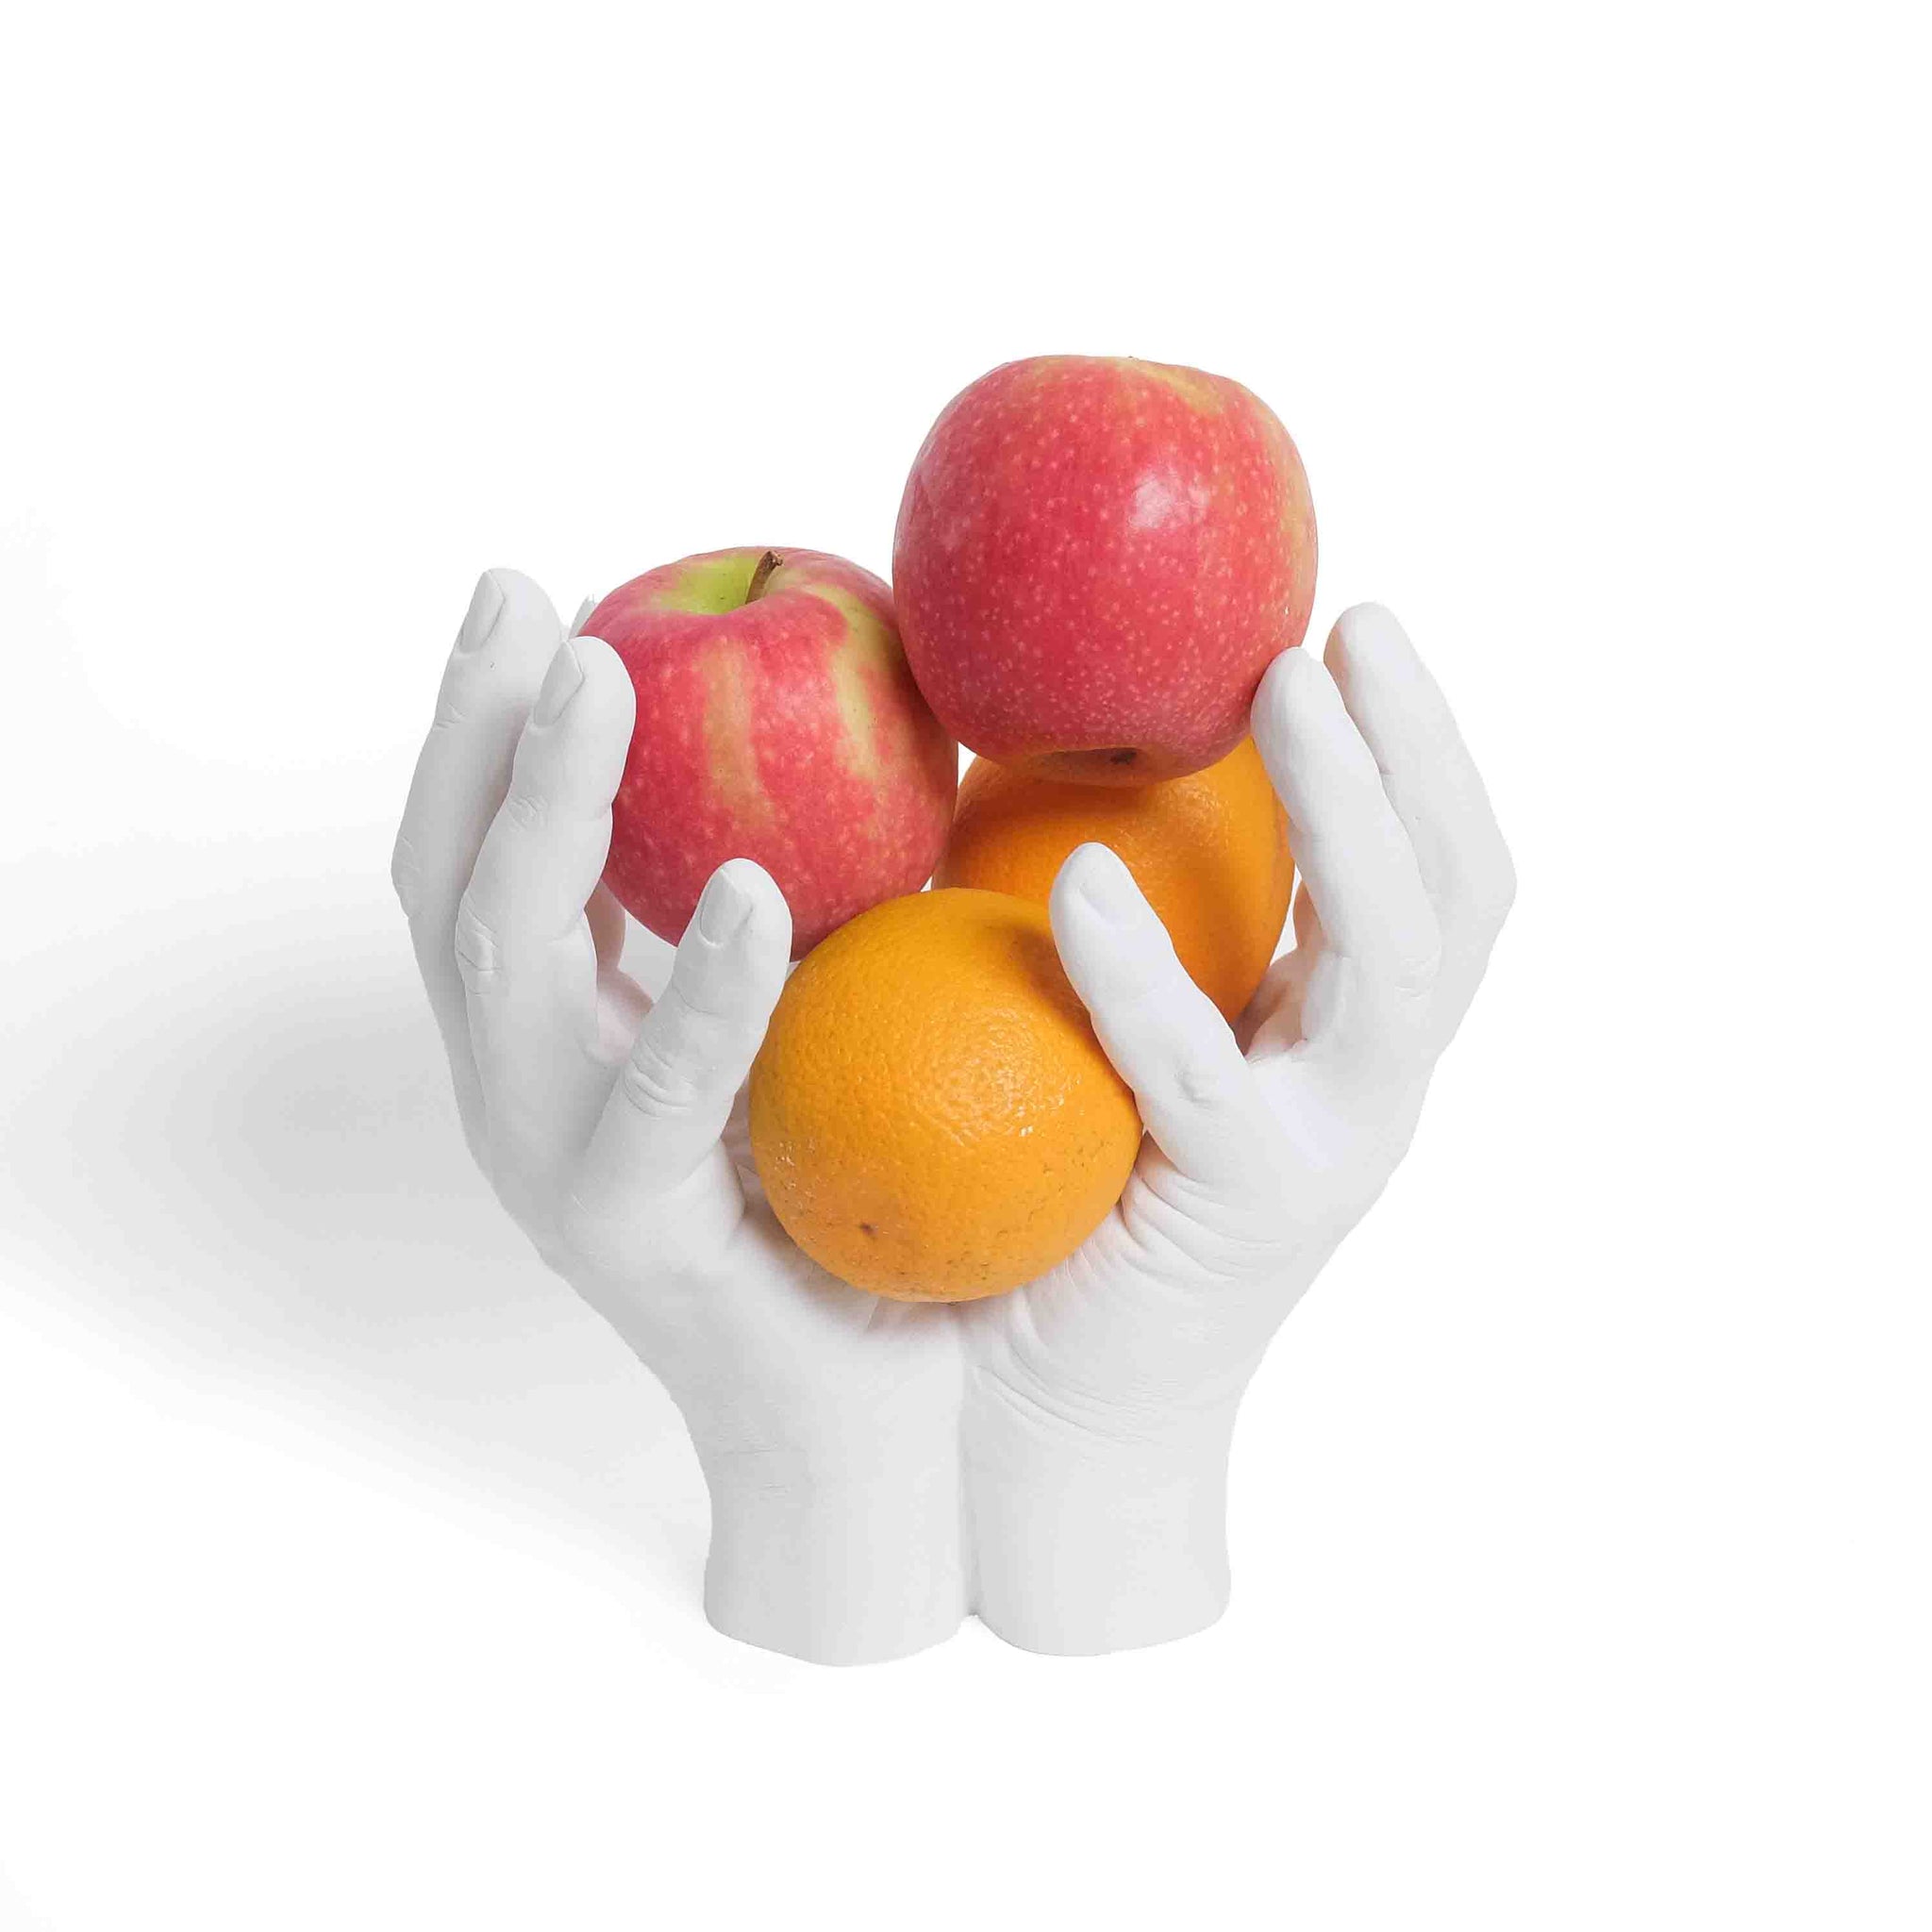 Reality Hand-Bowl│Harry Allen│Areaware│Fruitschaal in de vorm van echte handen│art. HARBHW│voorkant met appels en sinaasappels